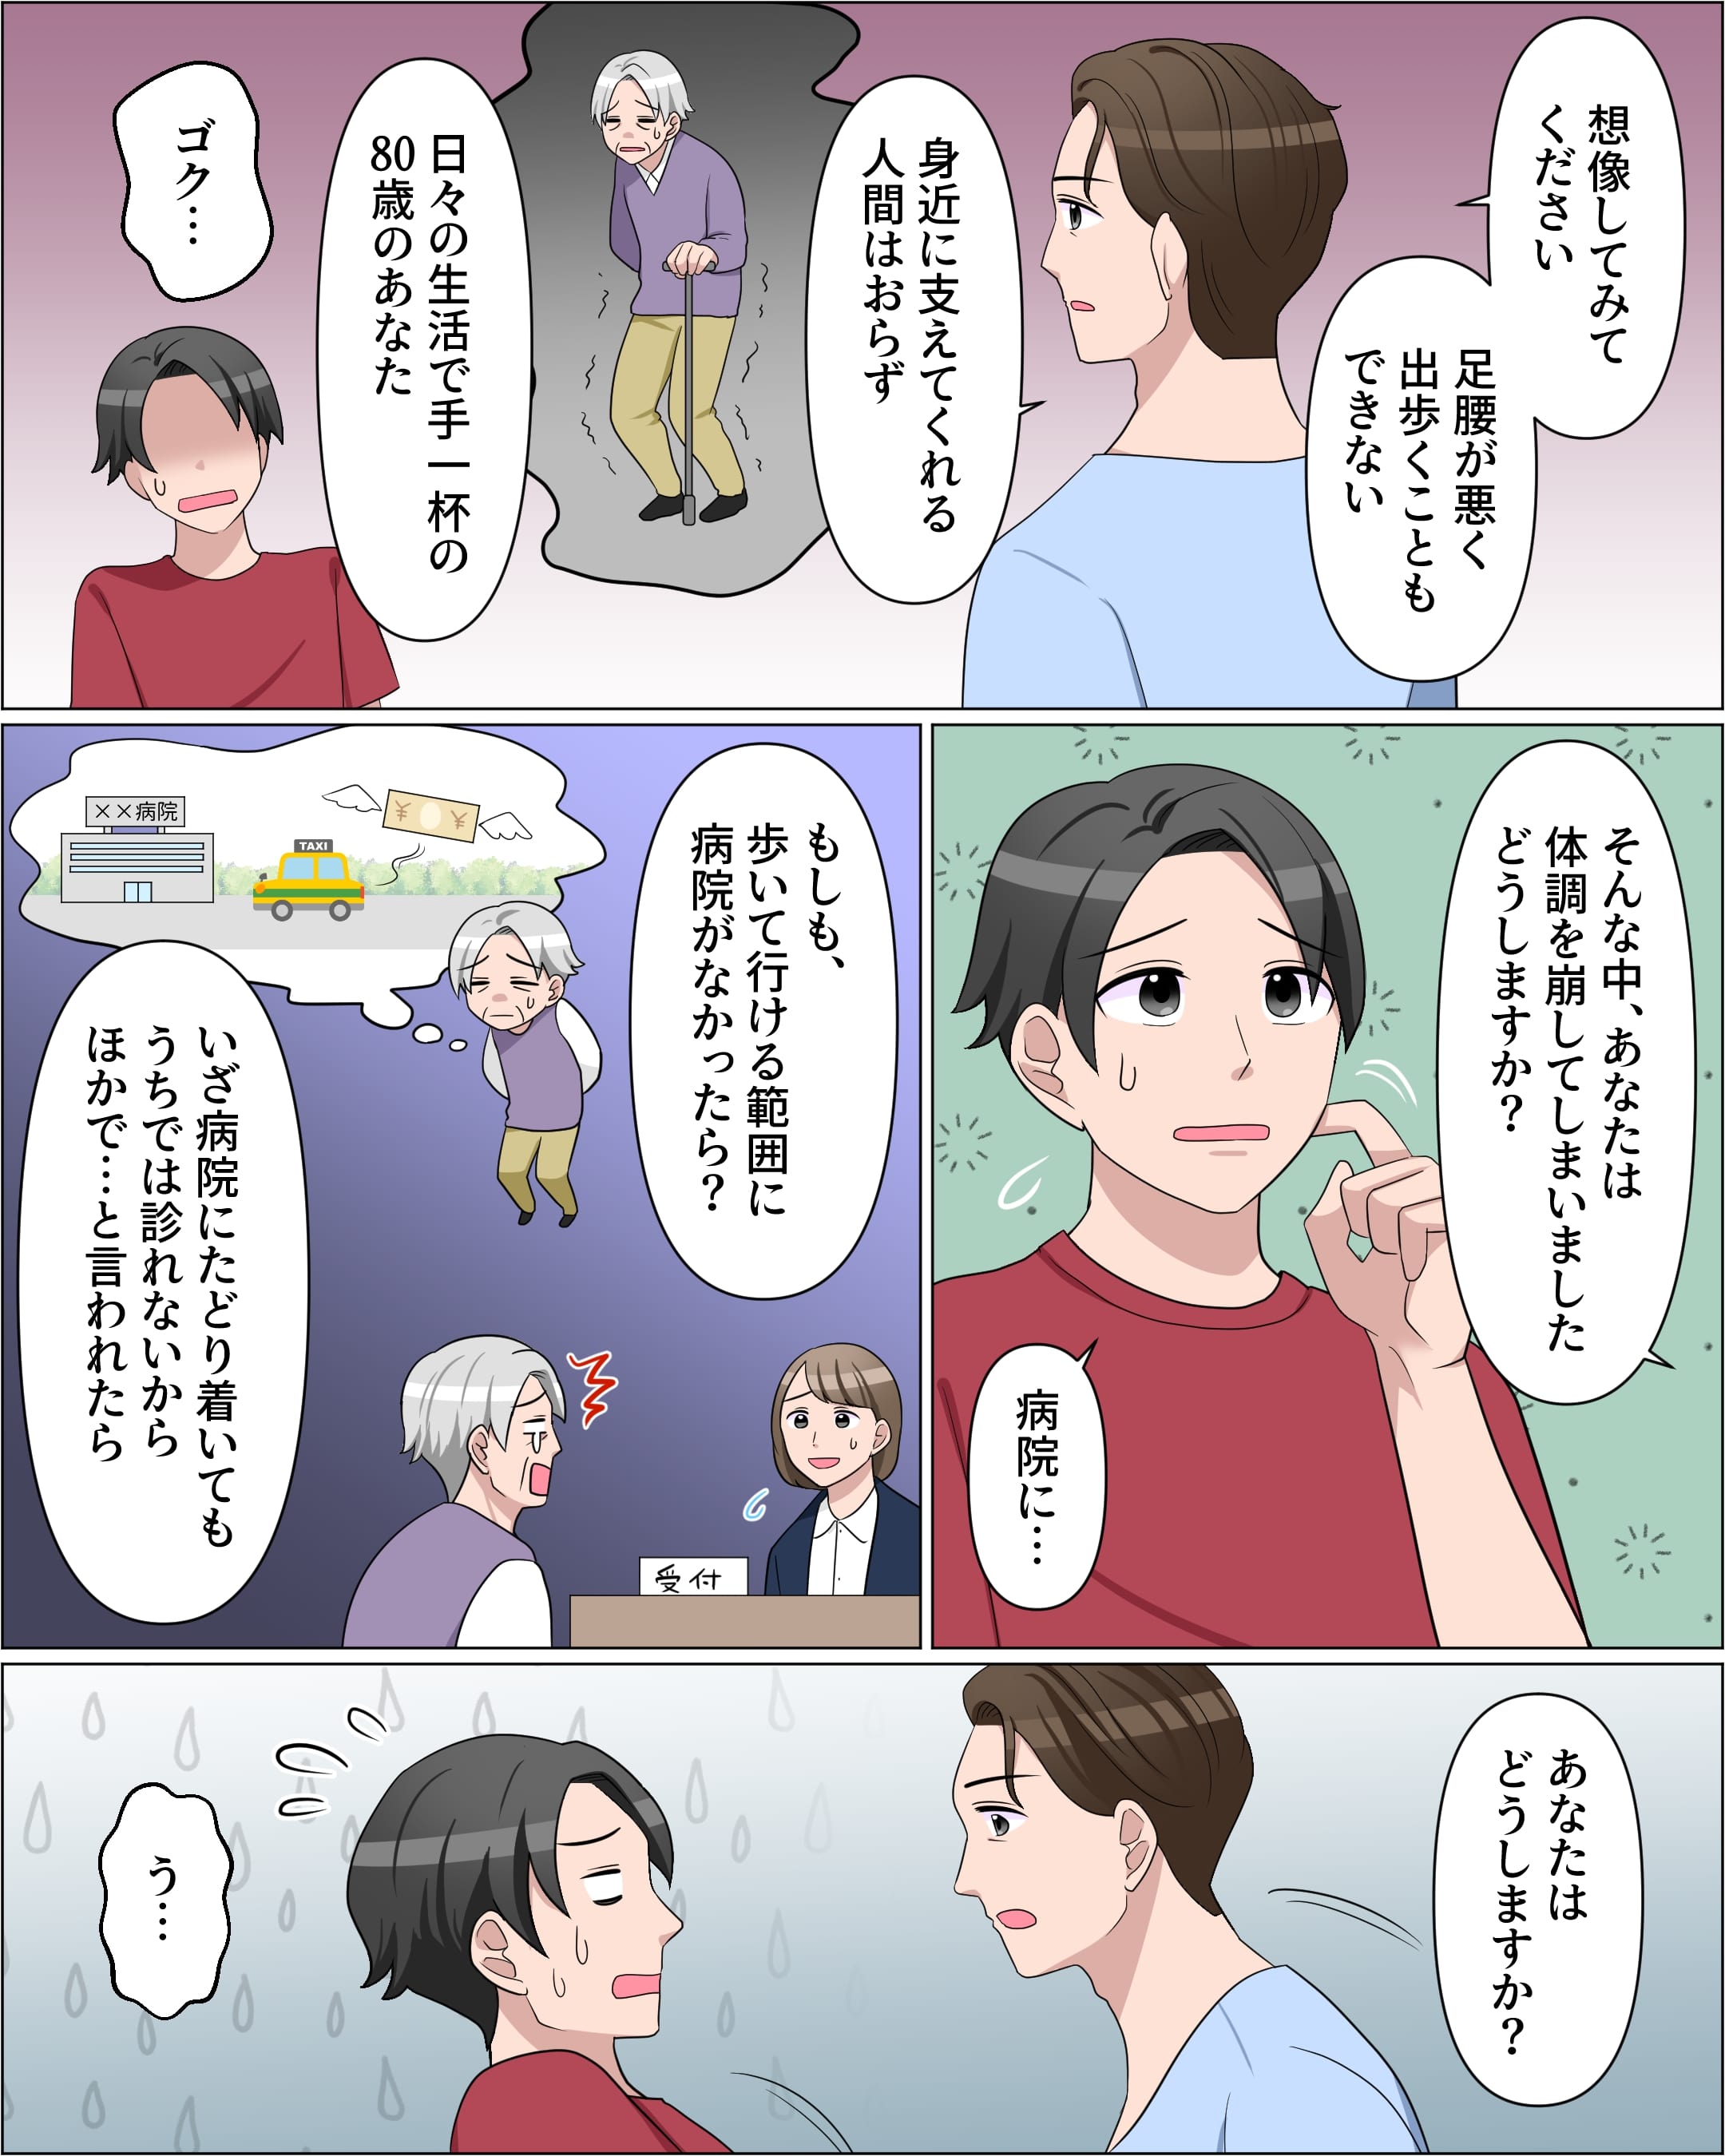 高齢者社会になる日本-2